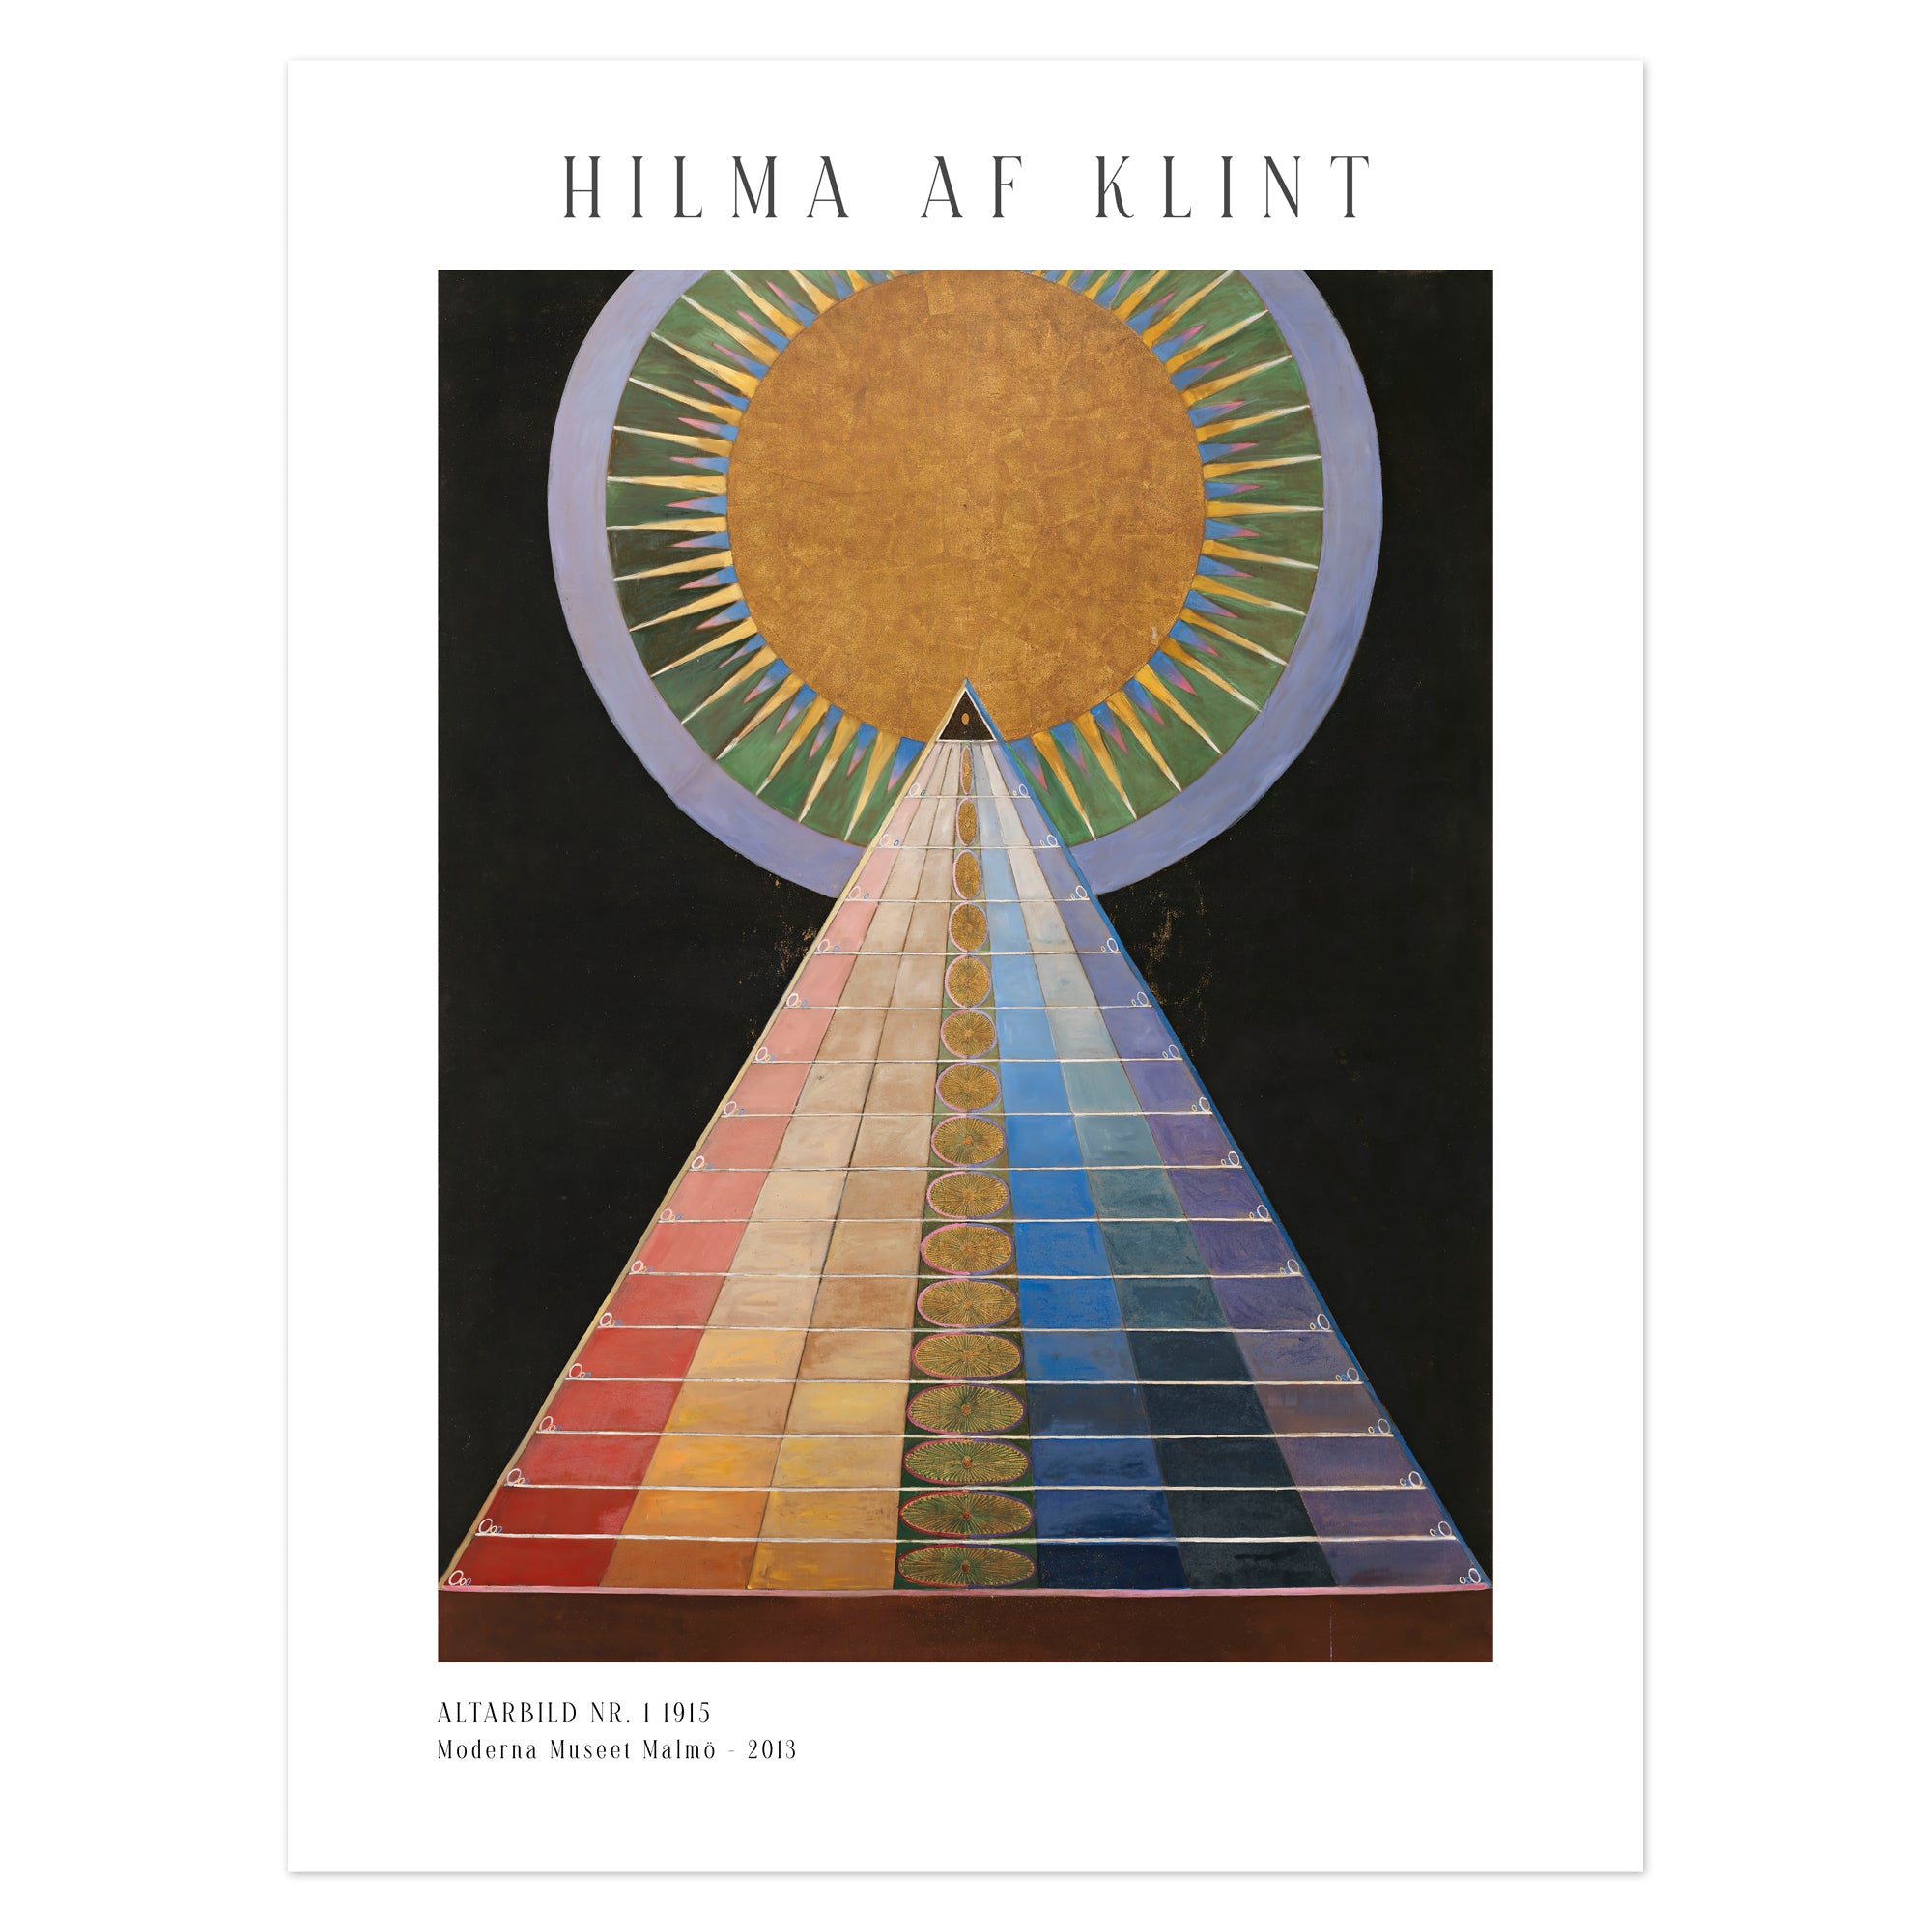 Hilma af Klint Poster - Altarbild nr. 1